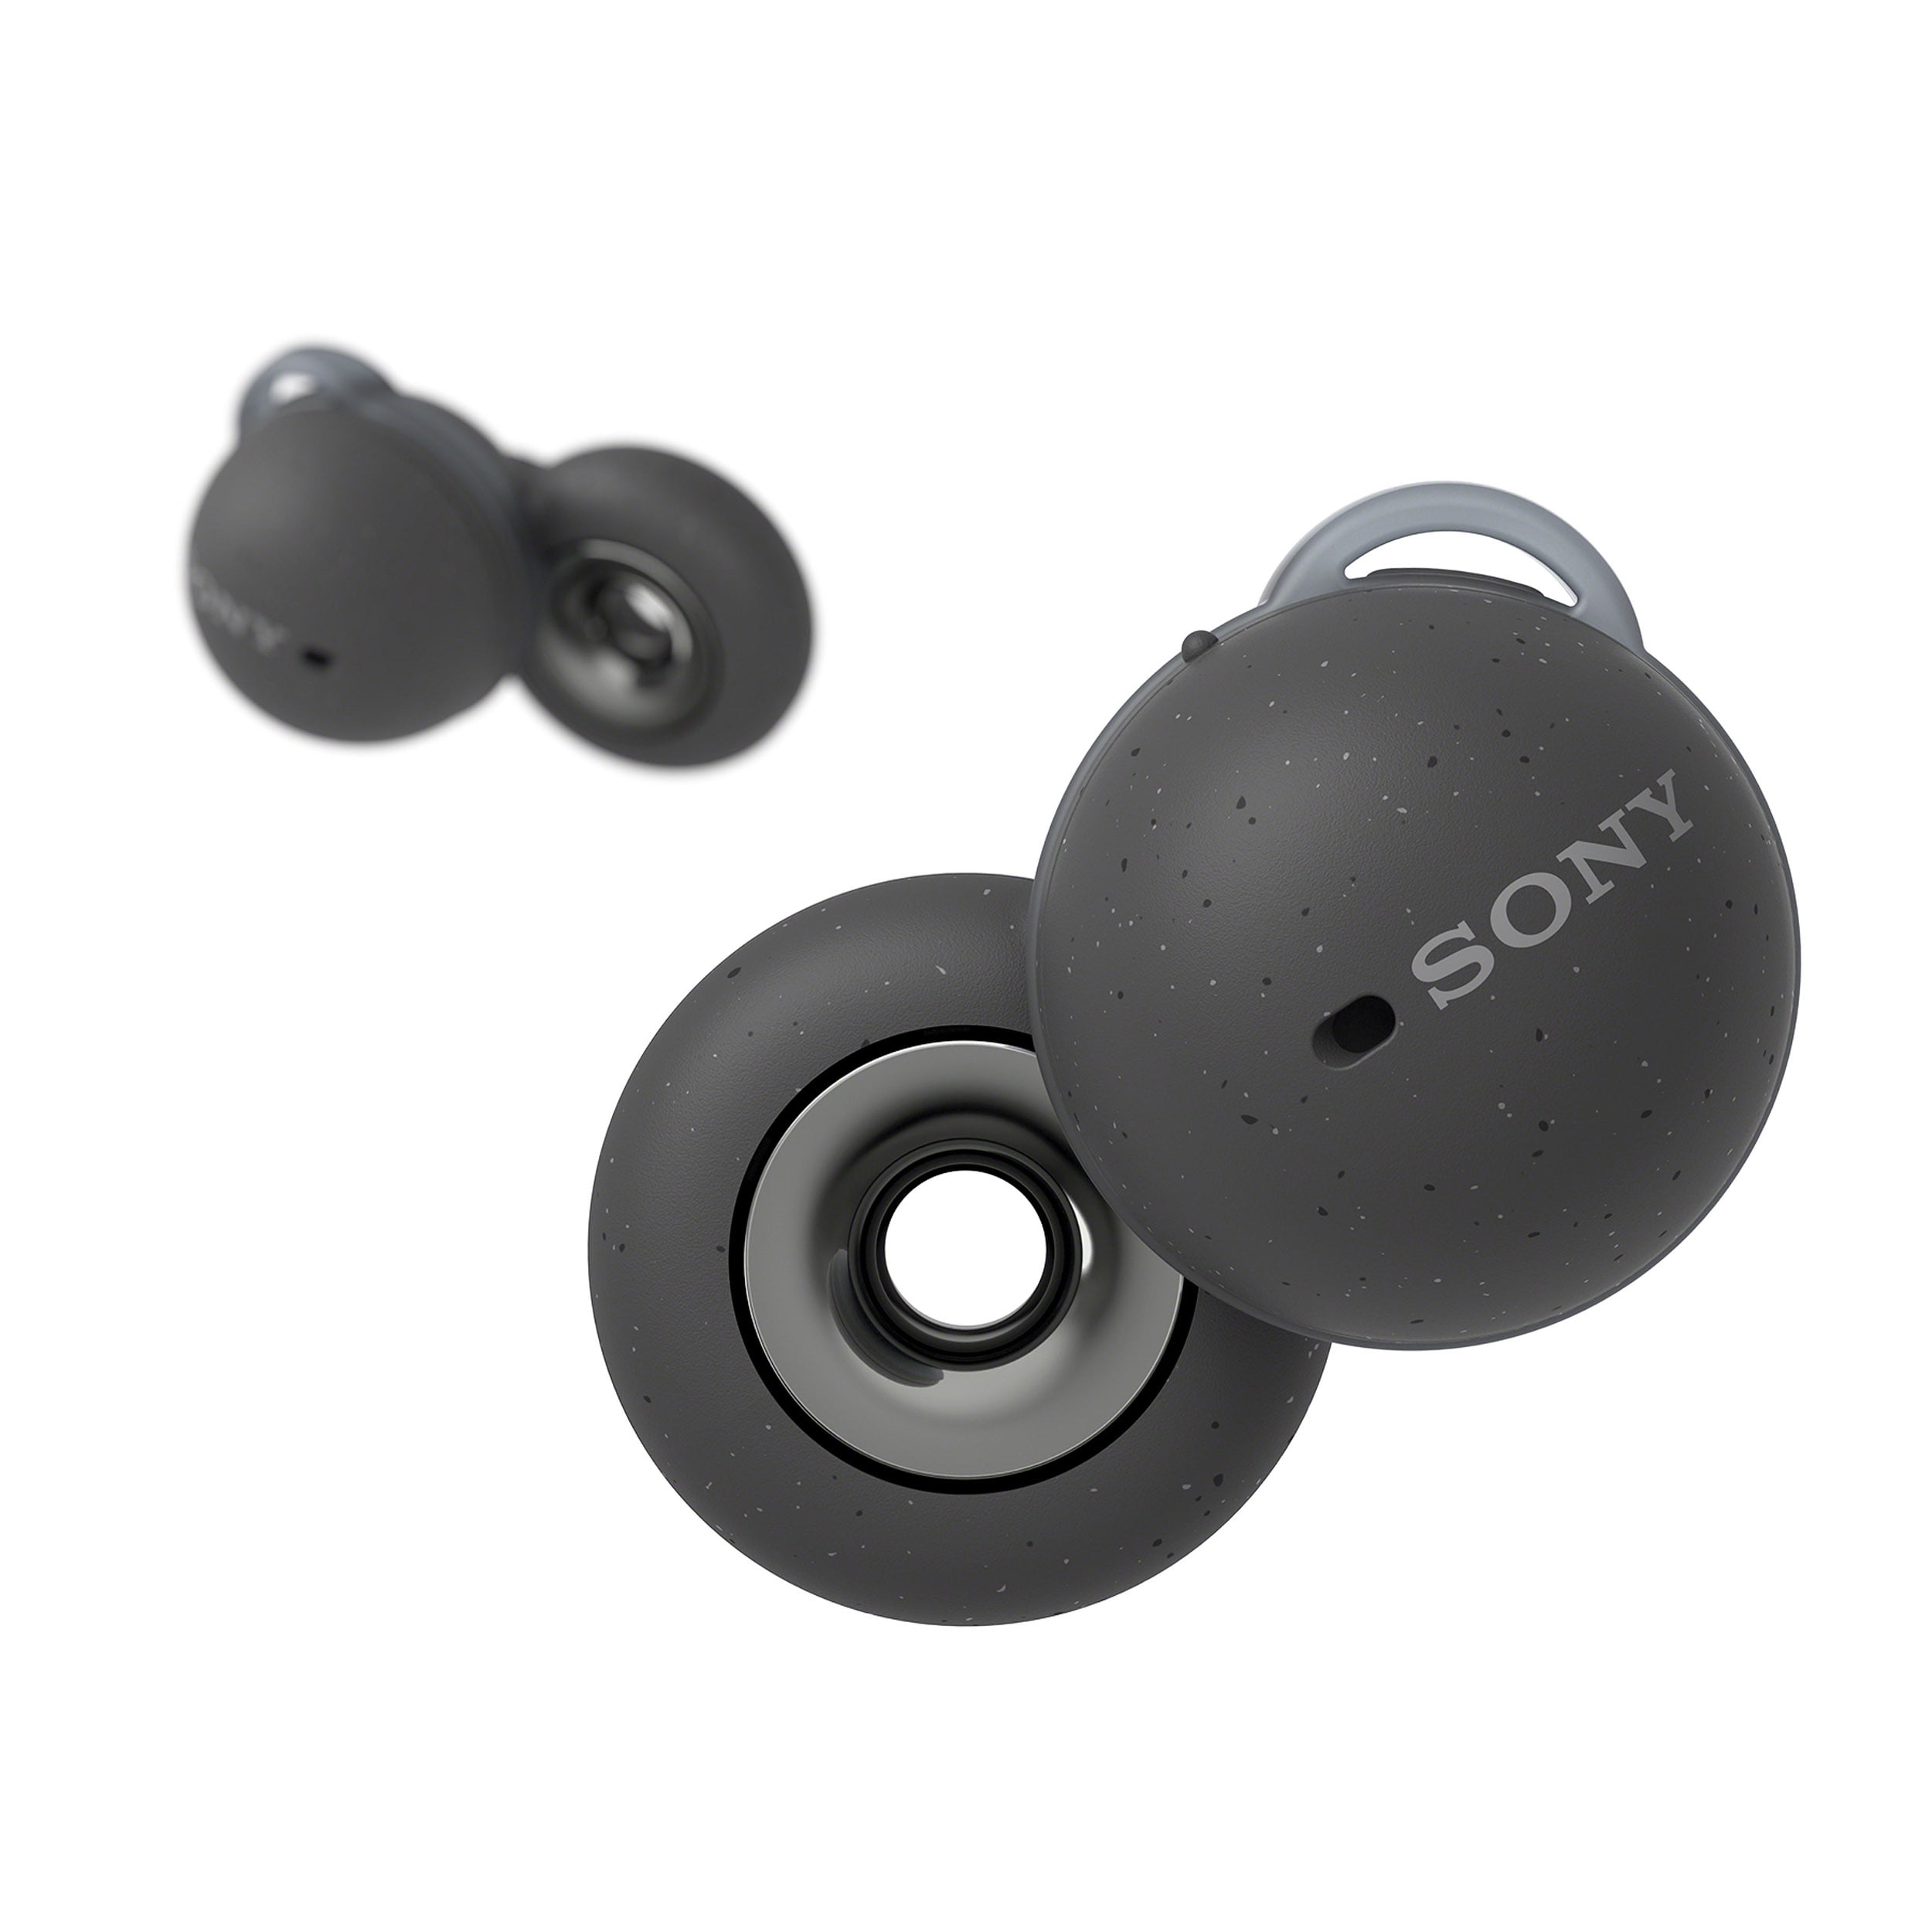 Sony LinkBuds Truly Wireless Earbud Headphones, Gray - Walmart.com